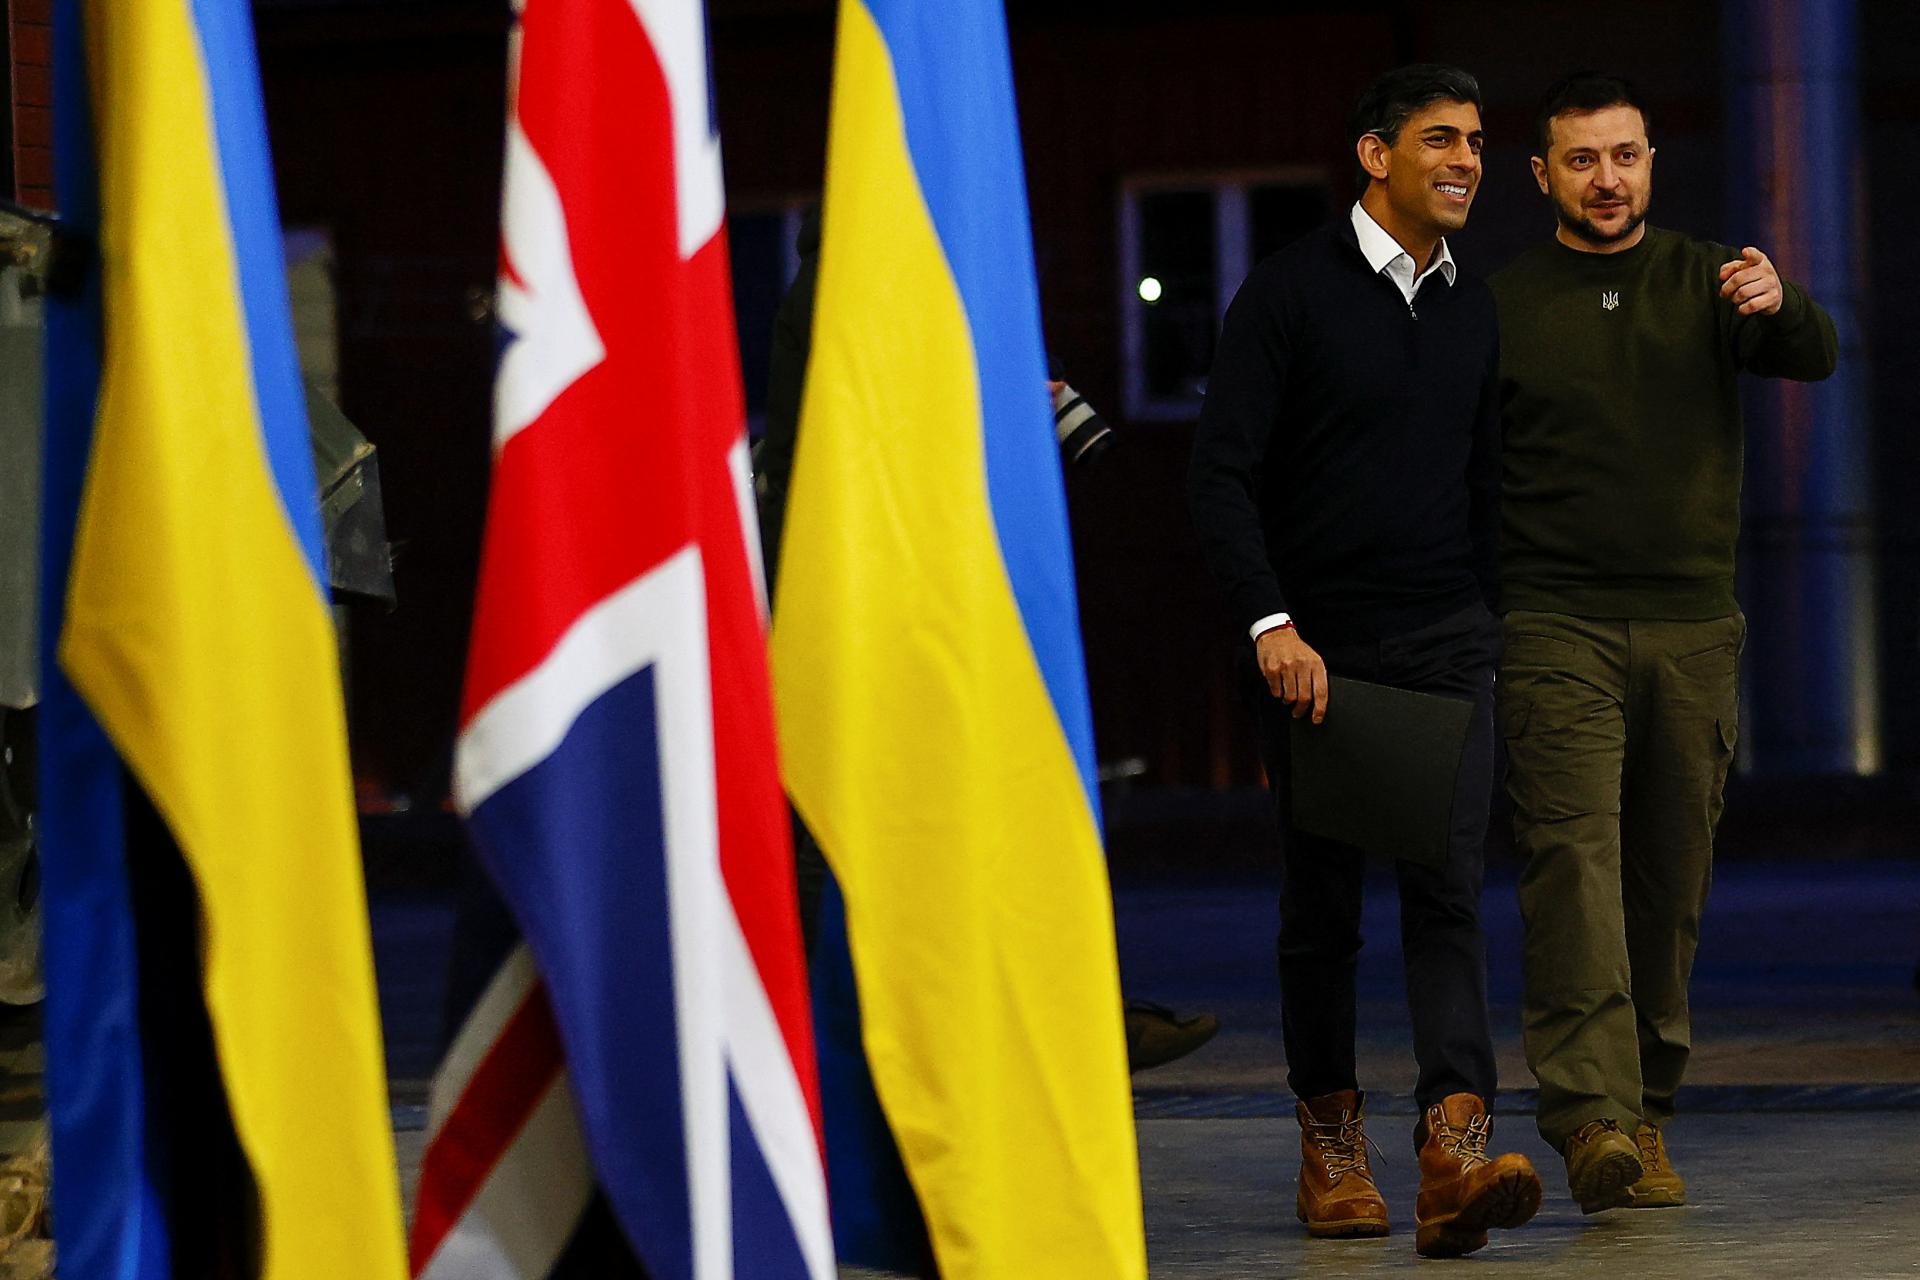 Britskí priemyselníci v Kyjeve rokujú o výrobe zbraní priamo na Ukrajine, píše The Telegraph